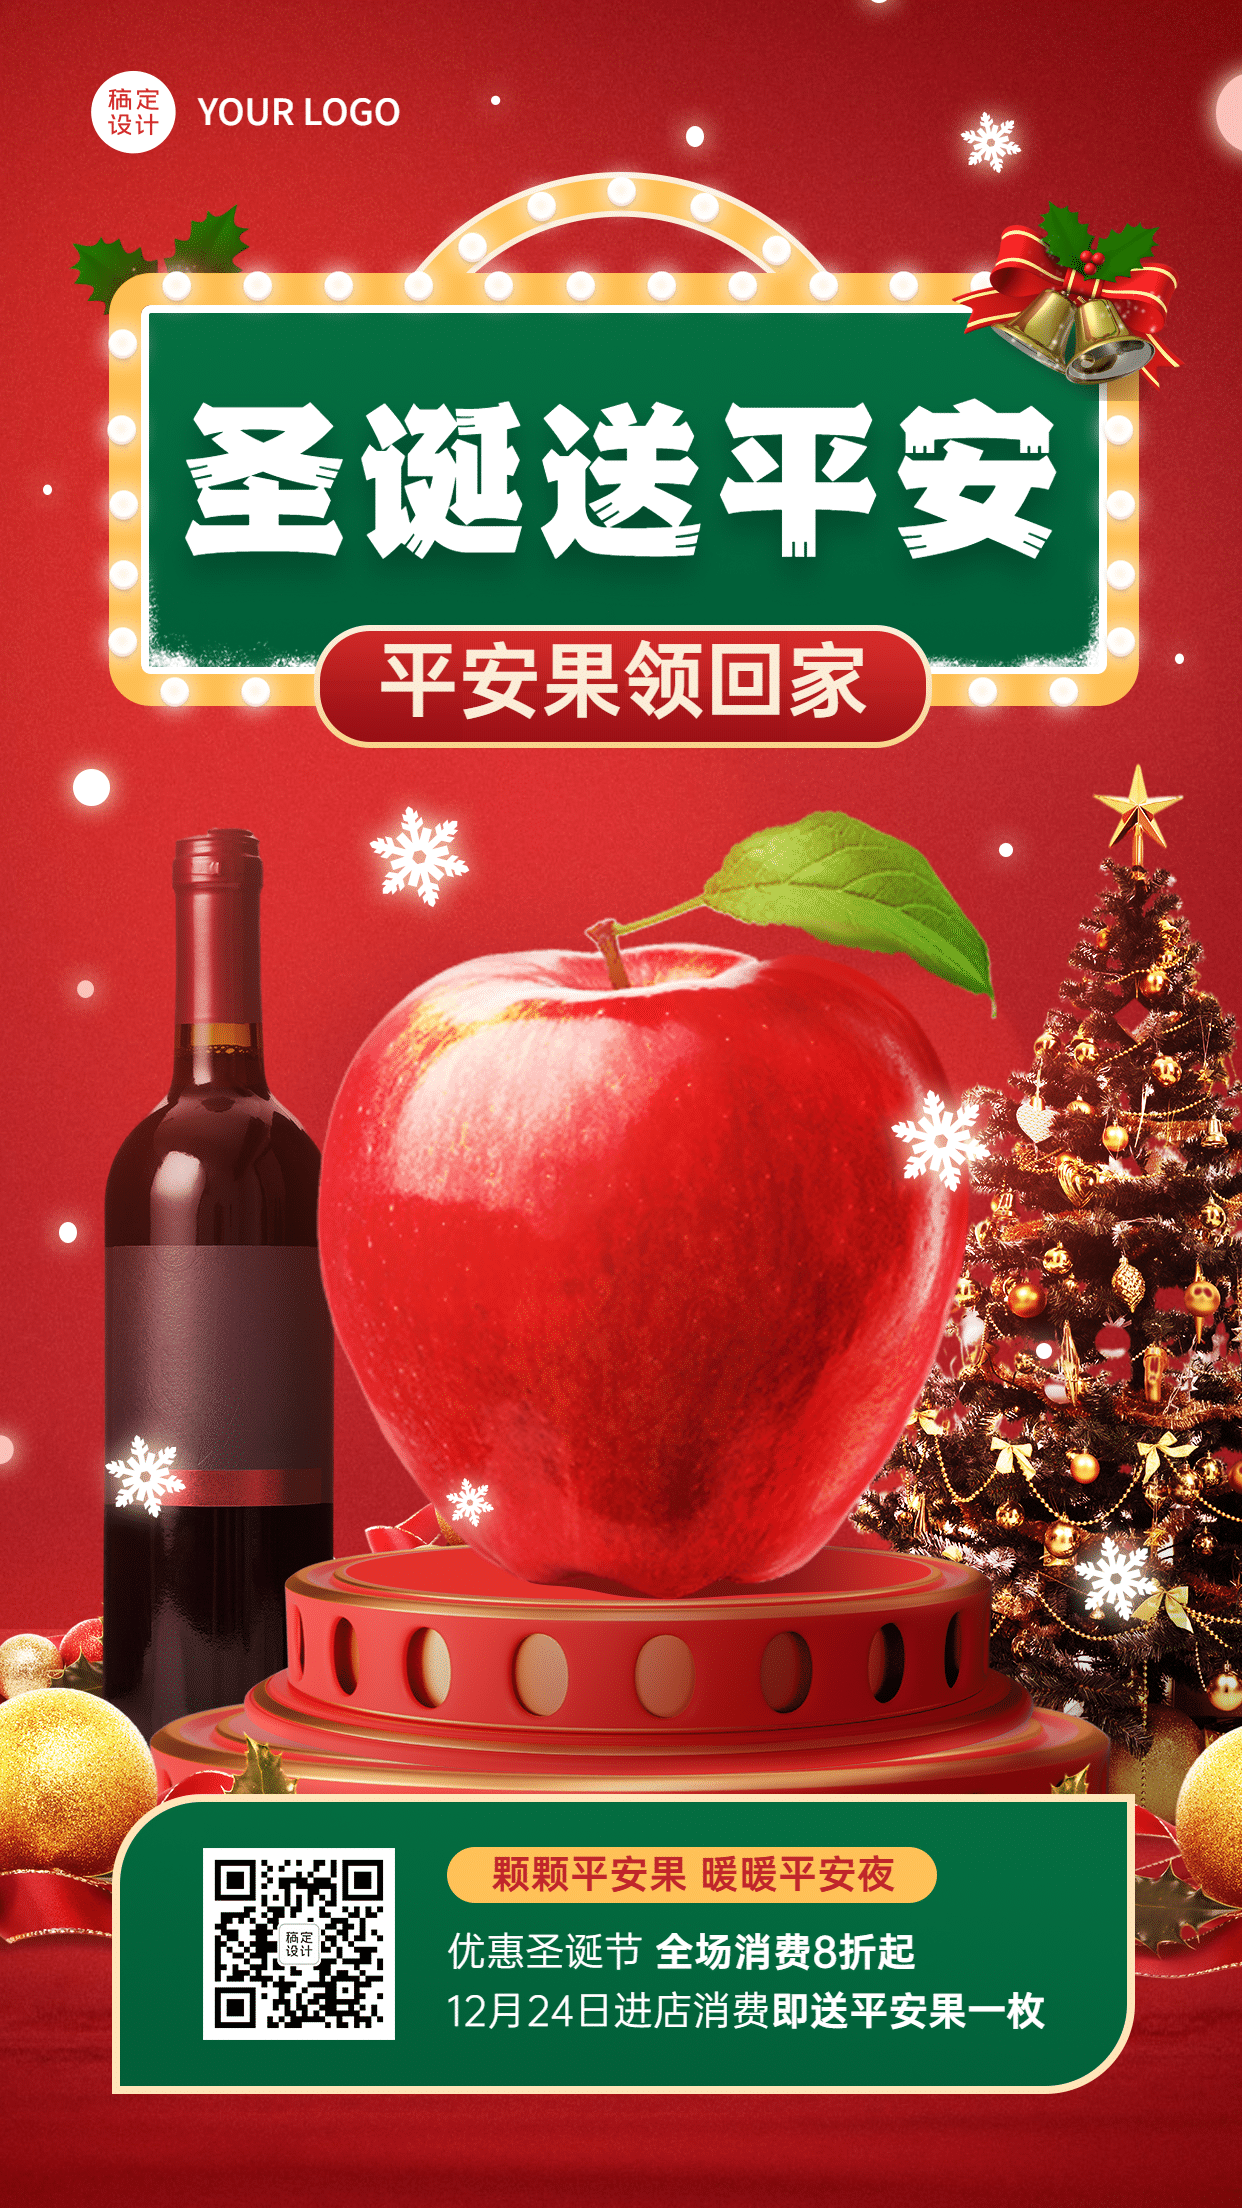 圣诞节餐饮业营销苹果酒瓶手机海报